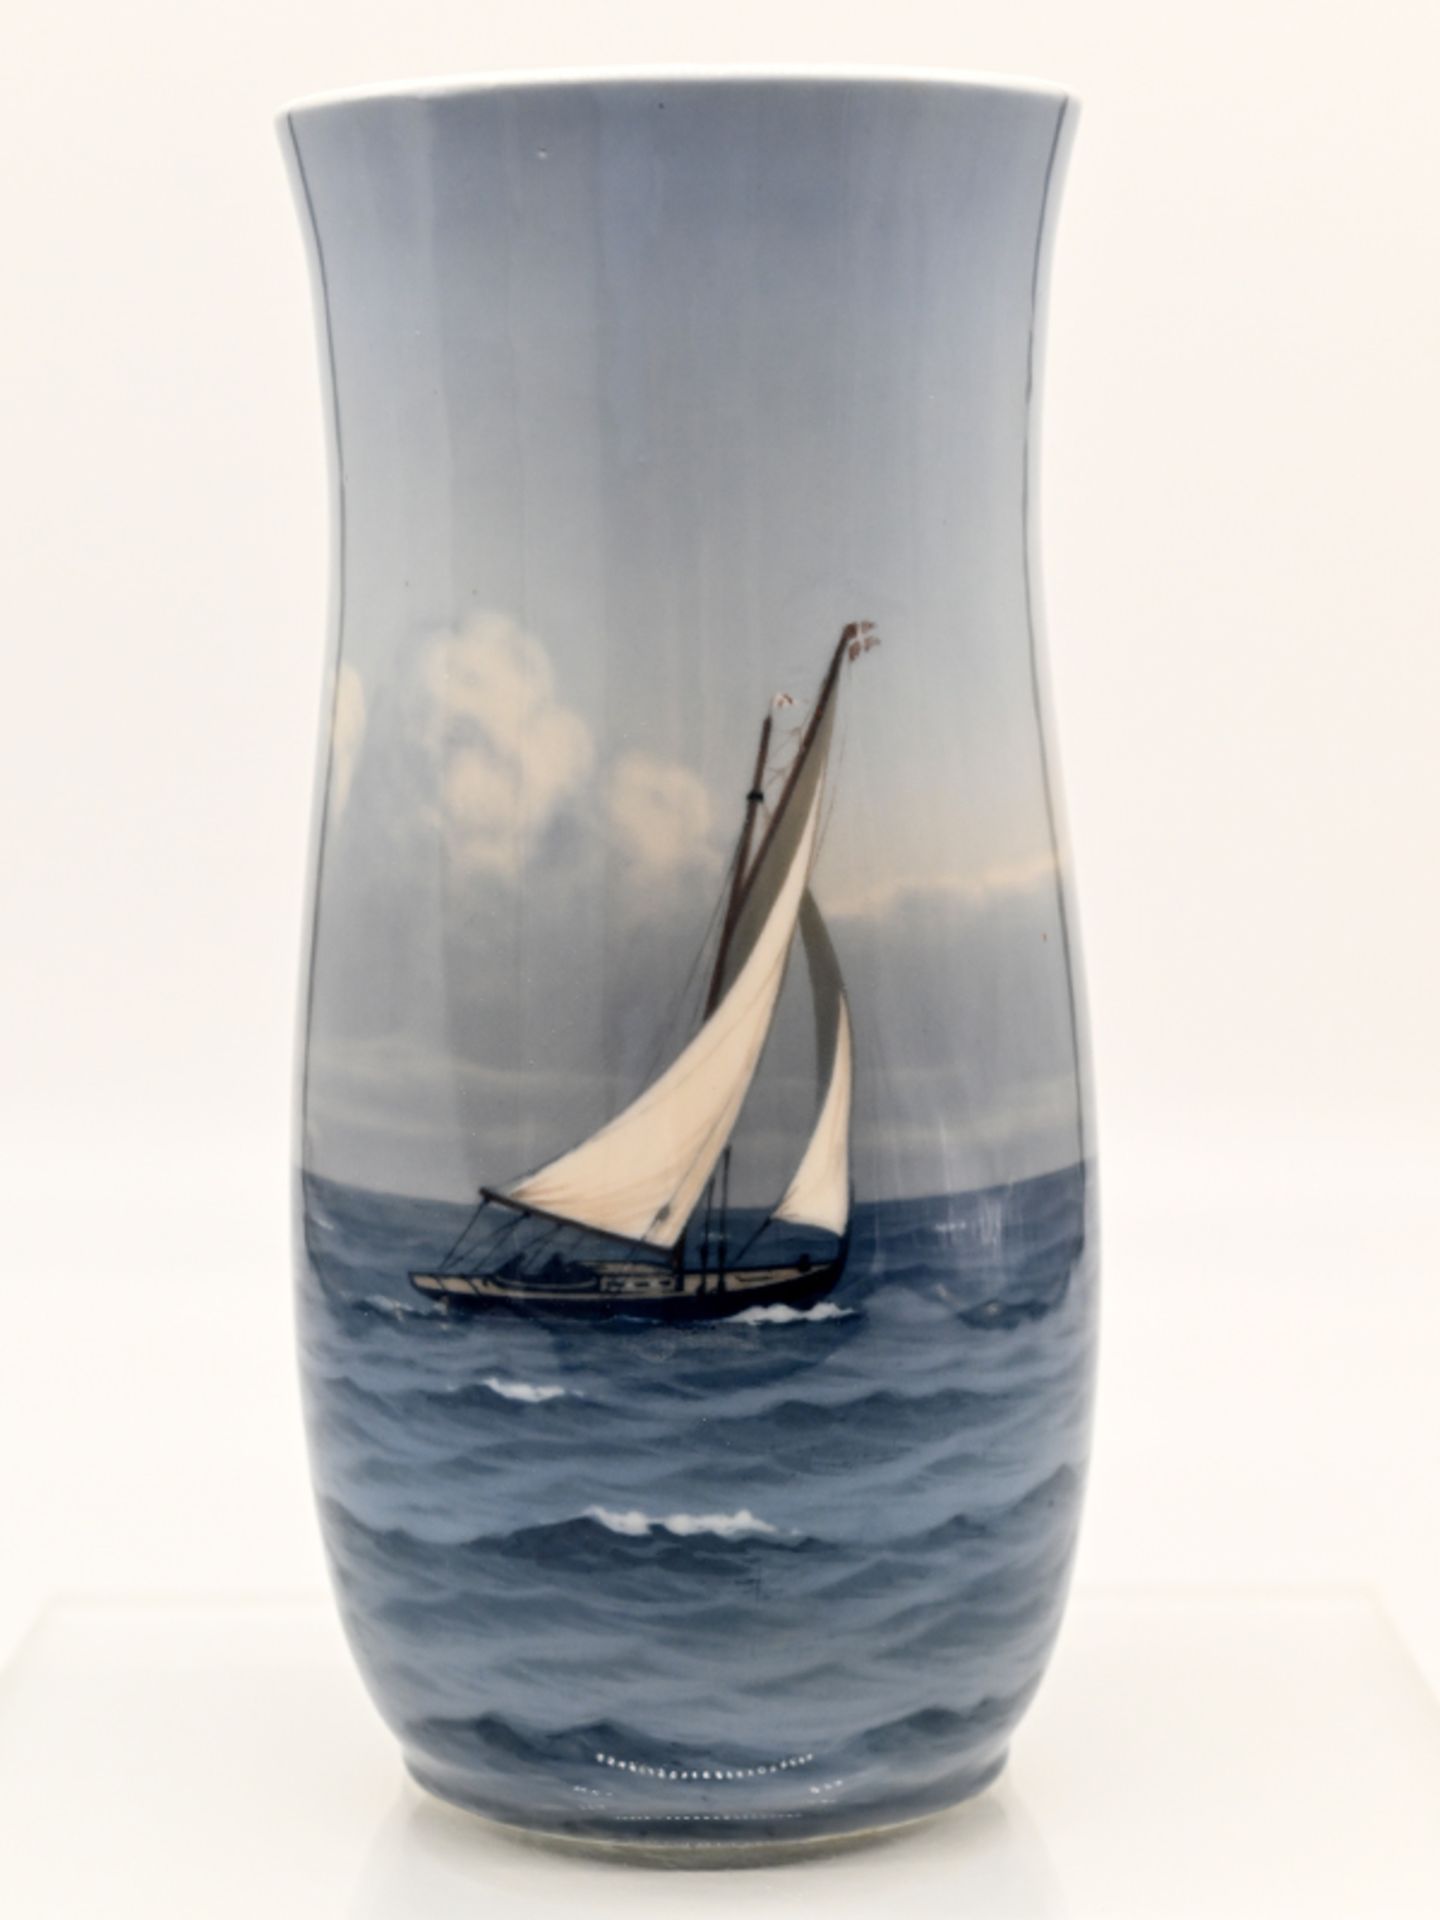 Große Vase mit Segler auf hoher See, Royal Copenhagen, 1897 - 1922.